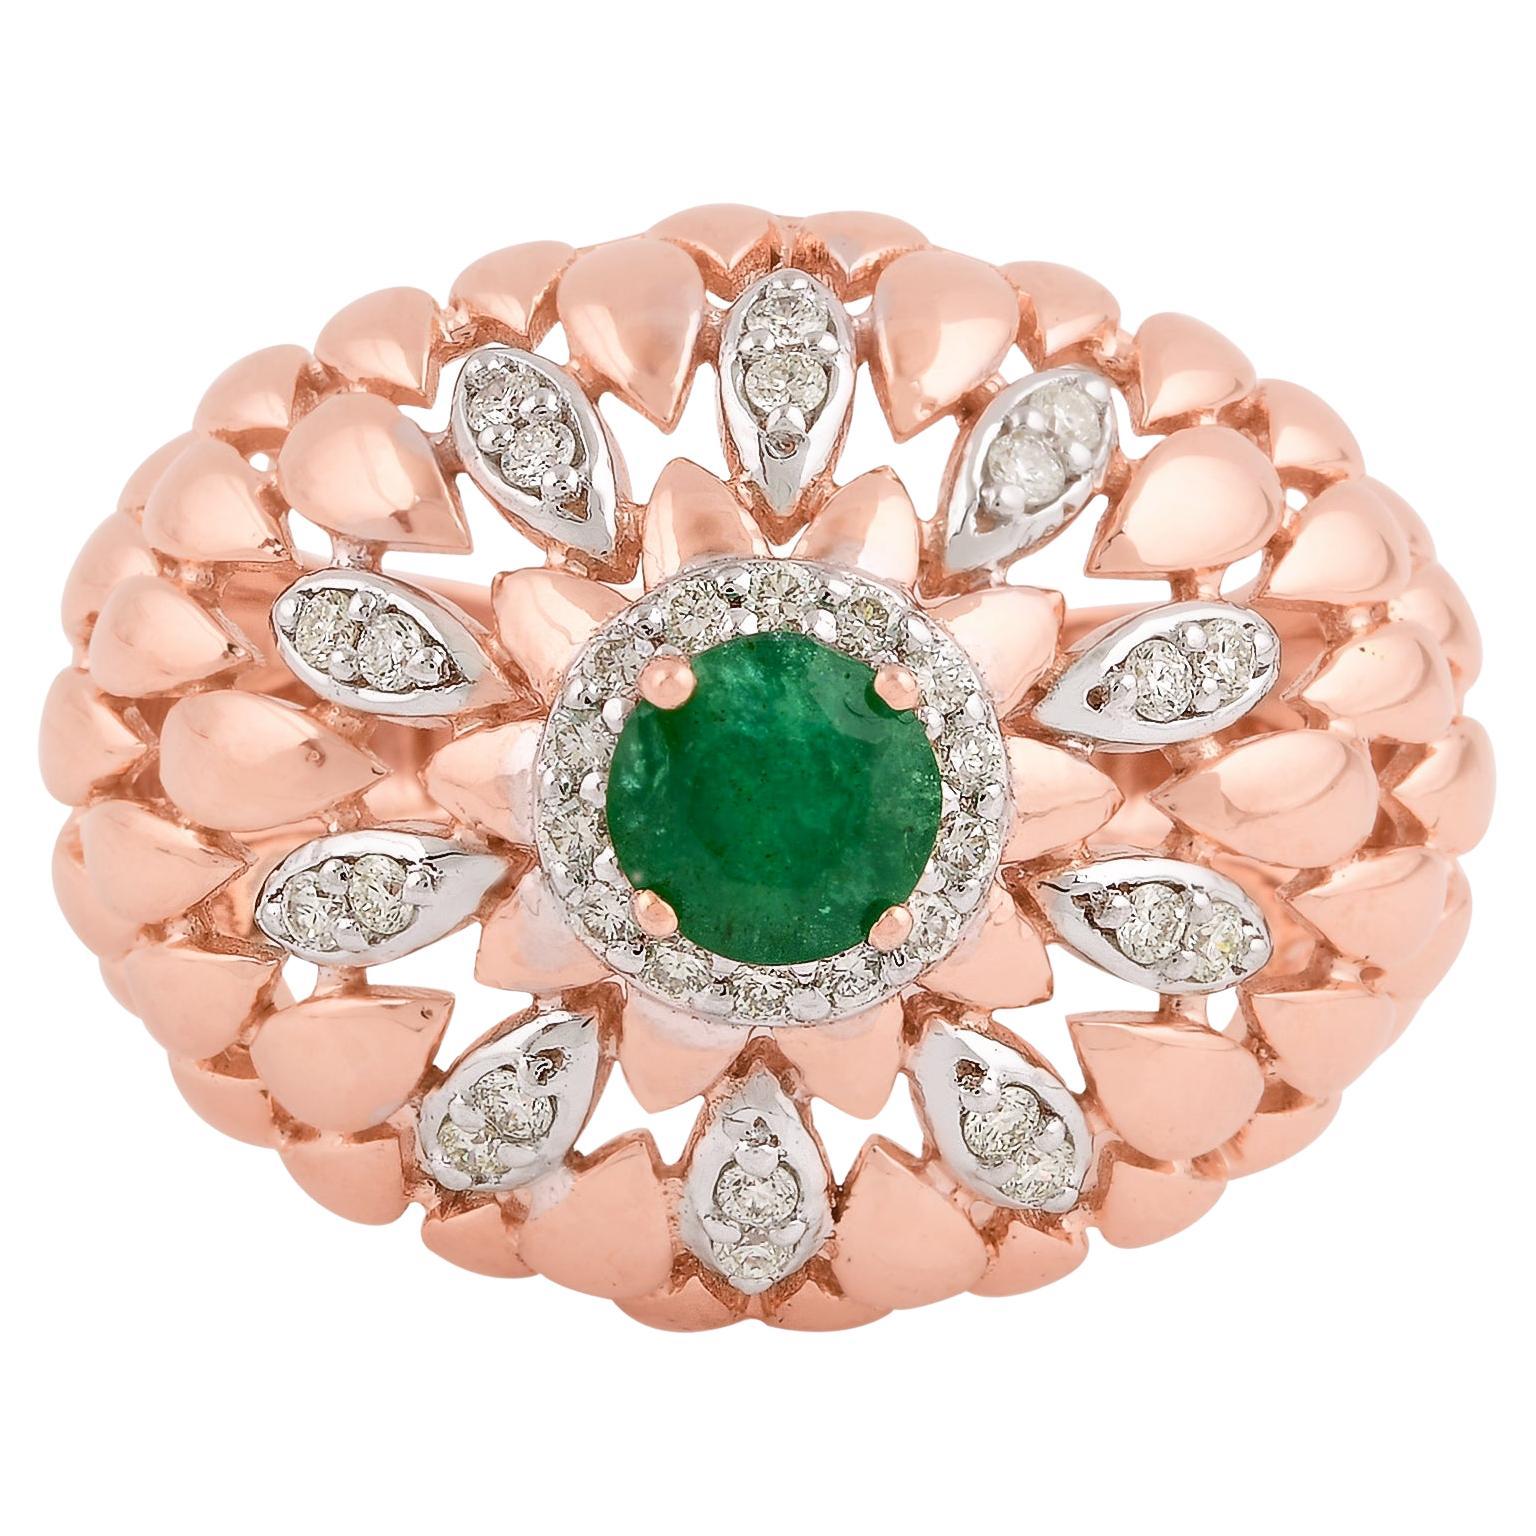 Zambian Emerald Gemstone Dome Ring Diamond Pave Solid 14k Rose Gold Fine Jewelry (bague en forme de dôme en émeraude zambienne, pavé de diamants, or rose massif) en vente